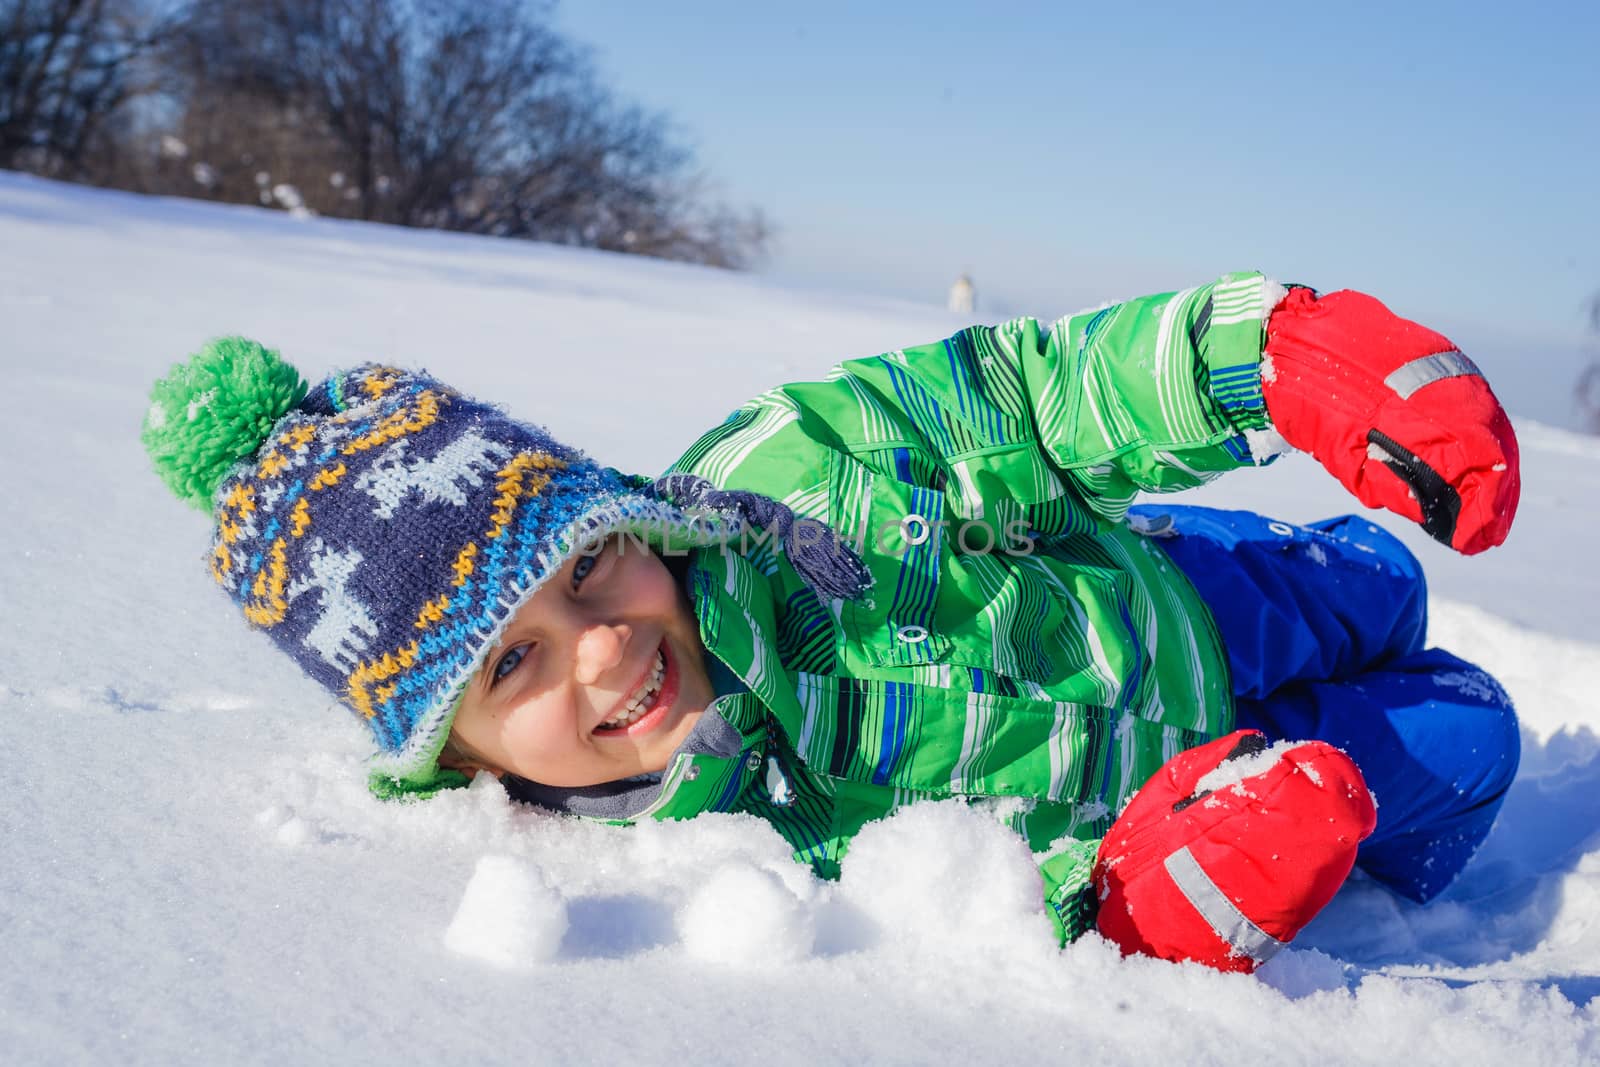 Little boy in winter park by maxoliki